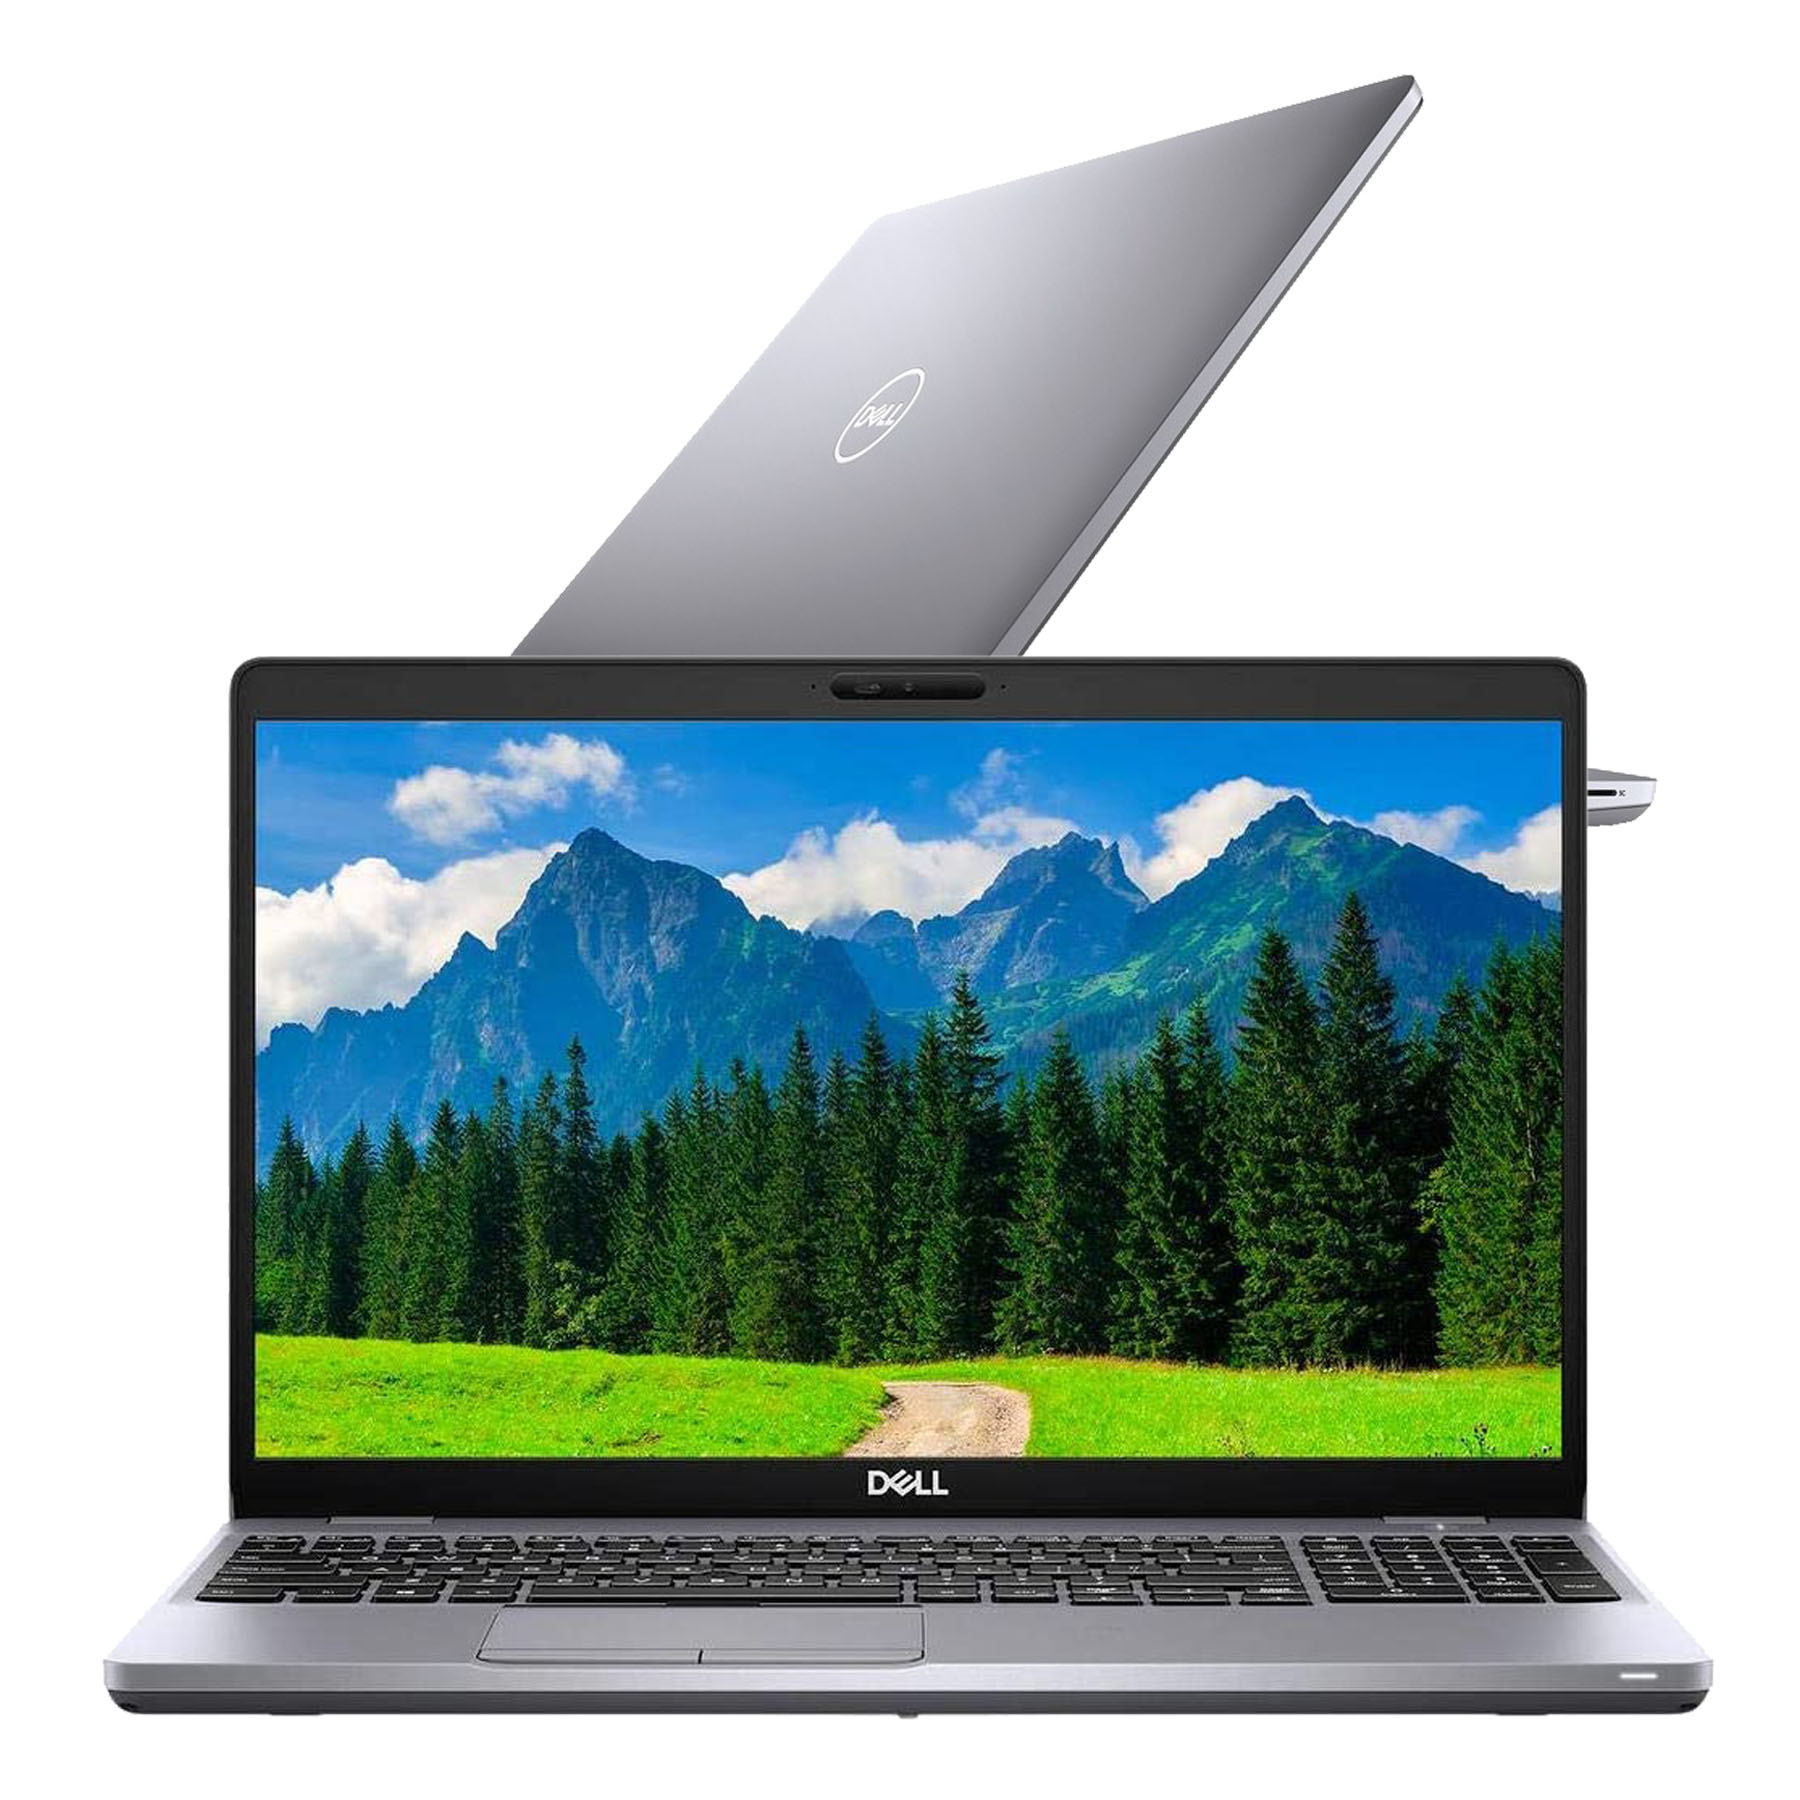 Bán laptop Dell cũ mới uy tín tại Hà Nội và trên toàn quốc